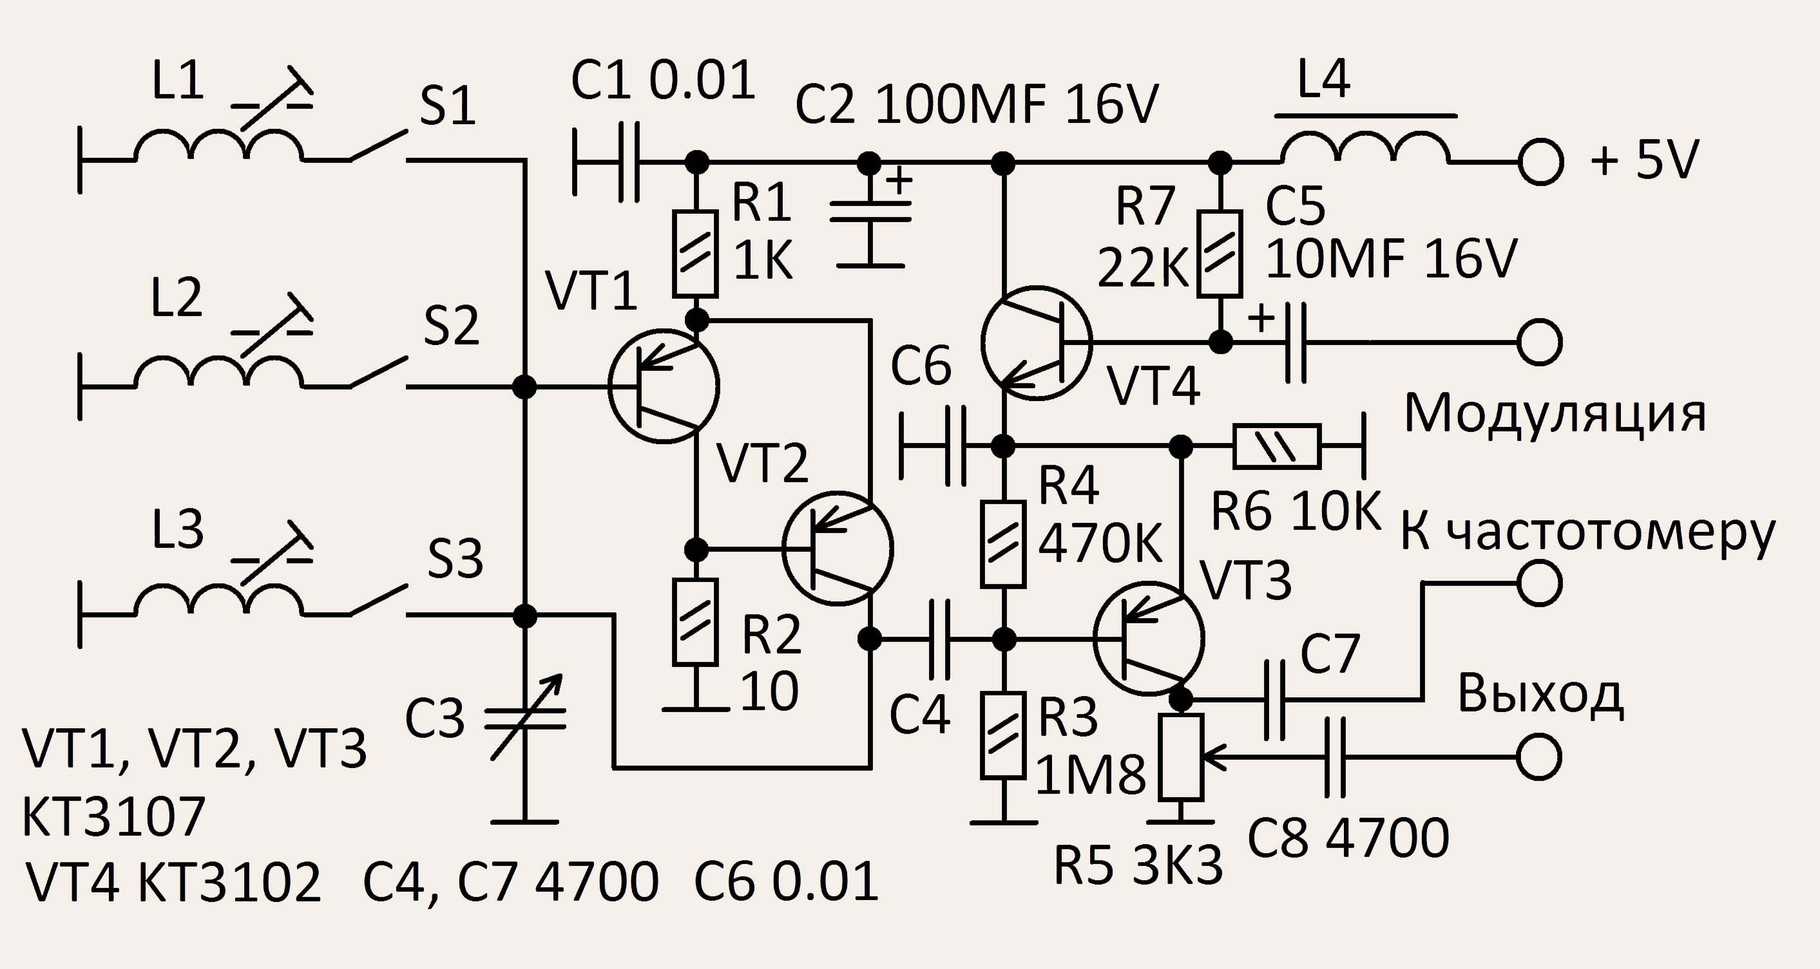 Звуковой генератор на транзисторах - схема реализации в практических условияхДостоинства недостатки